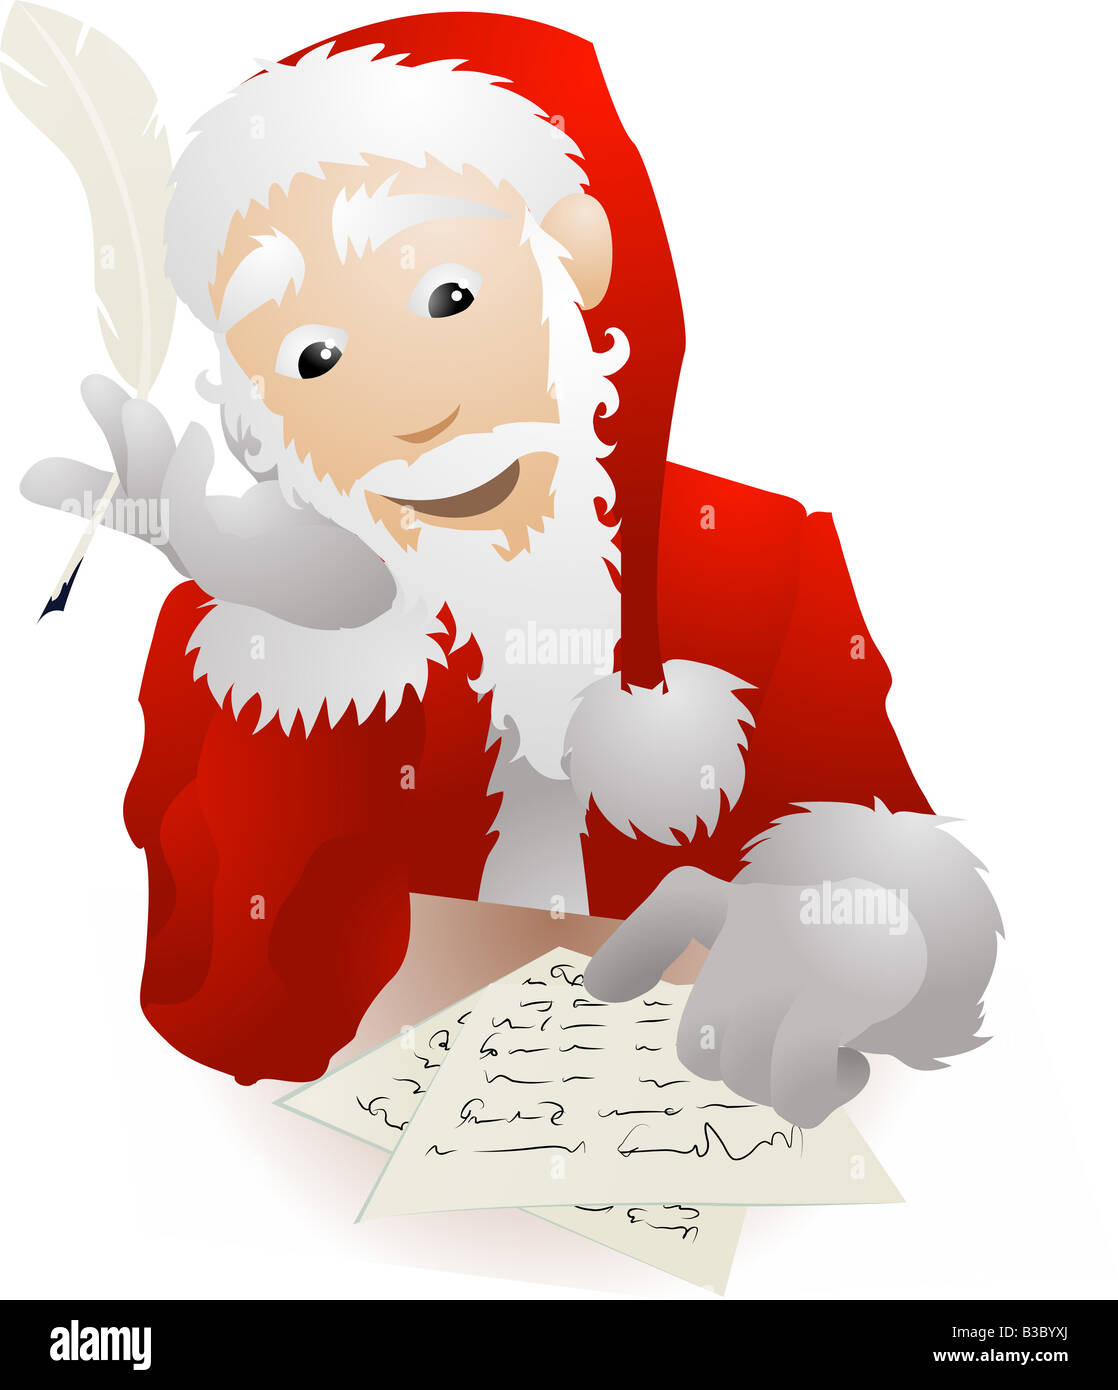 Zur Veranschaulichung der Weihnachtsmann oder Santa Claus Überprüfung seiner Wunschliste oder Kinder s Briefe beantworten Stockfoto